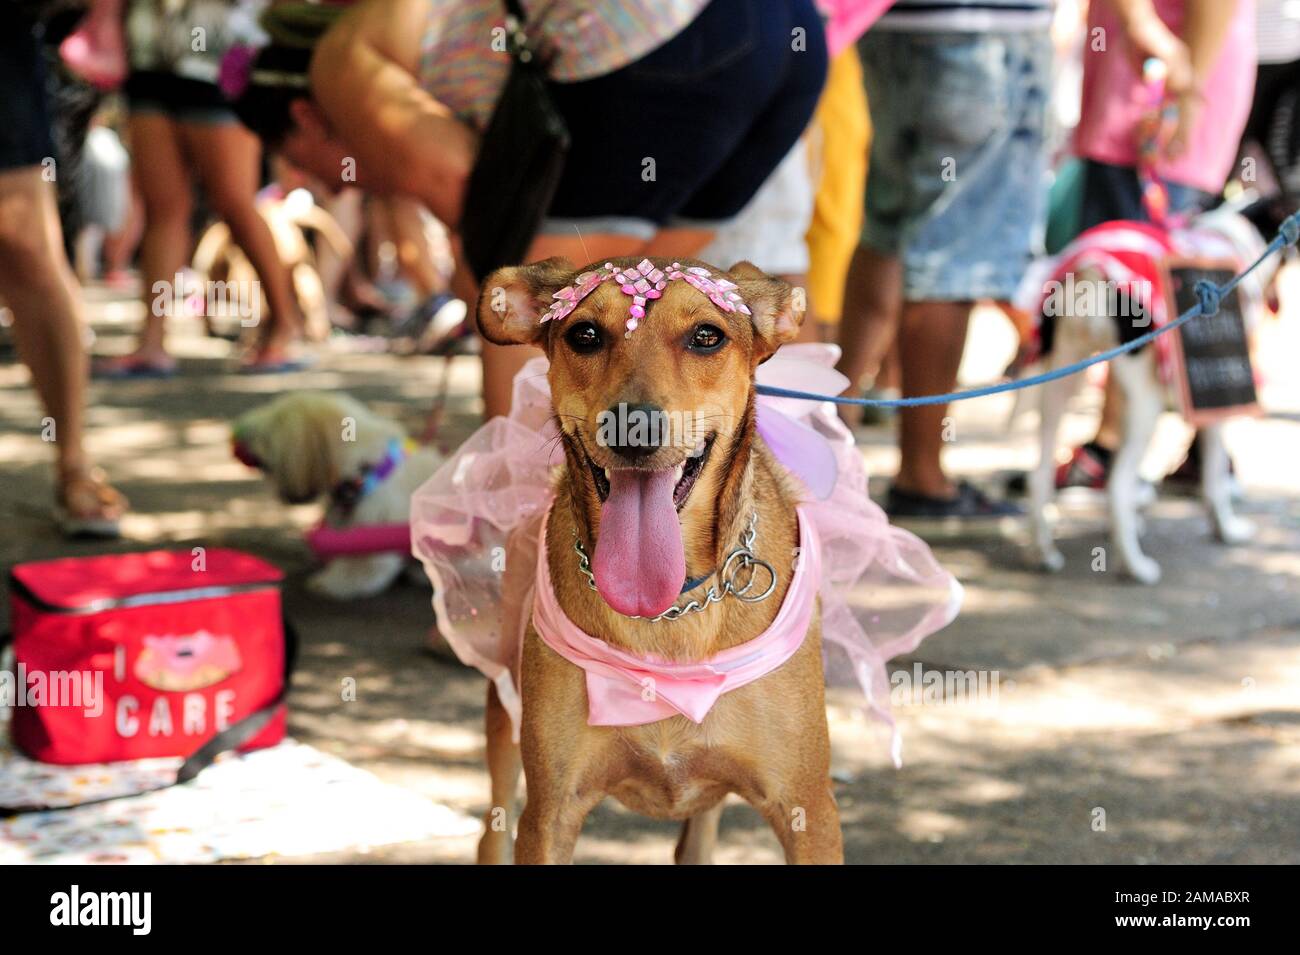 Brasilien - Februar 23, 2019: Kostümierte Hund bekommt in der Karneval Geist während der jährlichen pet-Party im Tijuca gehalten, in Rio de Janeiro's North Zone. Stockfoto